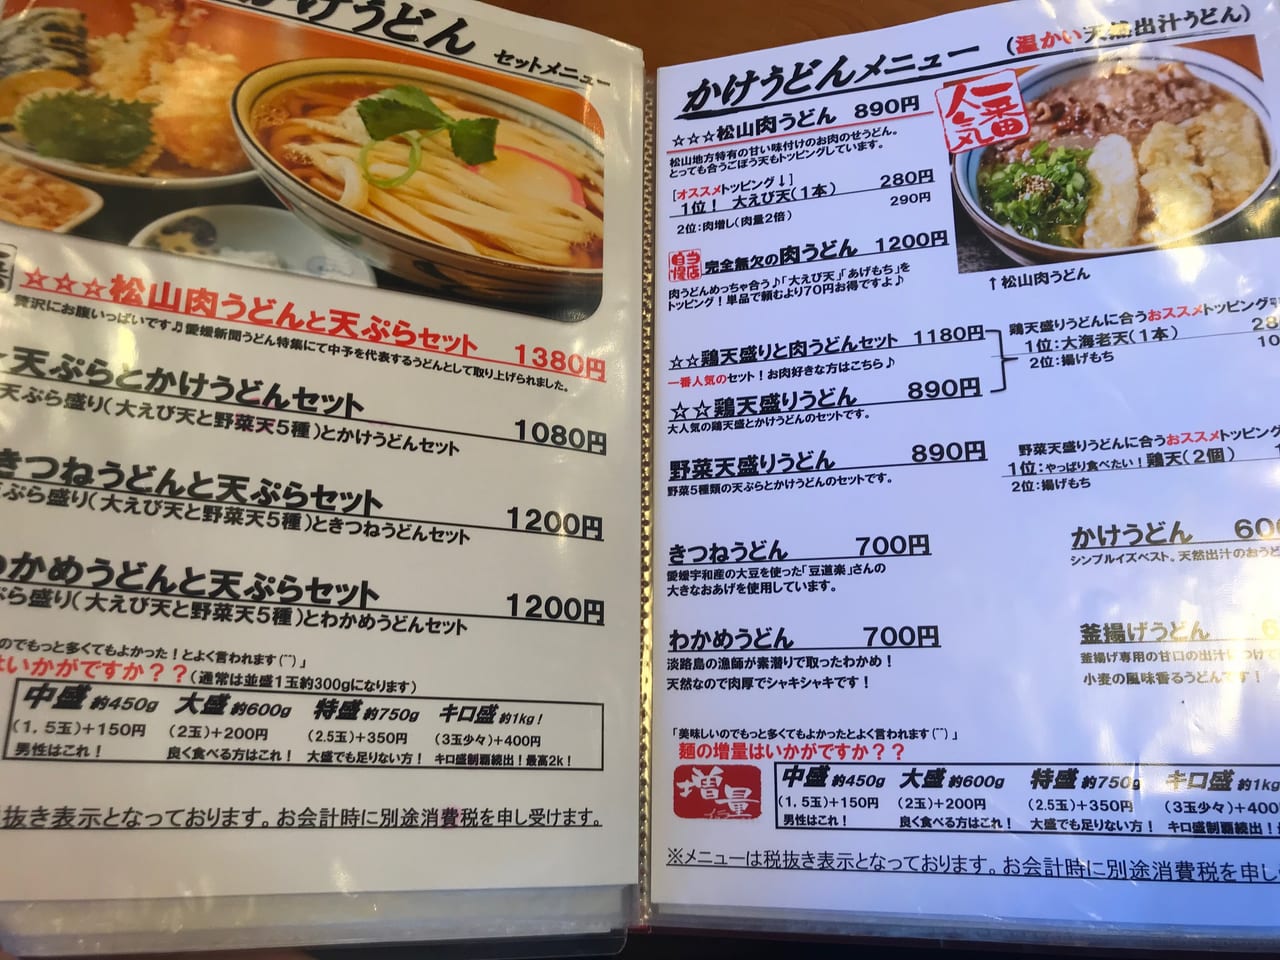 松山市 ファン多数 甘い味付けと天ぷらが人気のうどん屋 力みなぎる完全無欠うどん空太郎 くうたろう に行ってきました 号外net 松山 市 中予地方